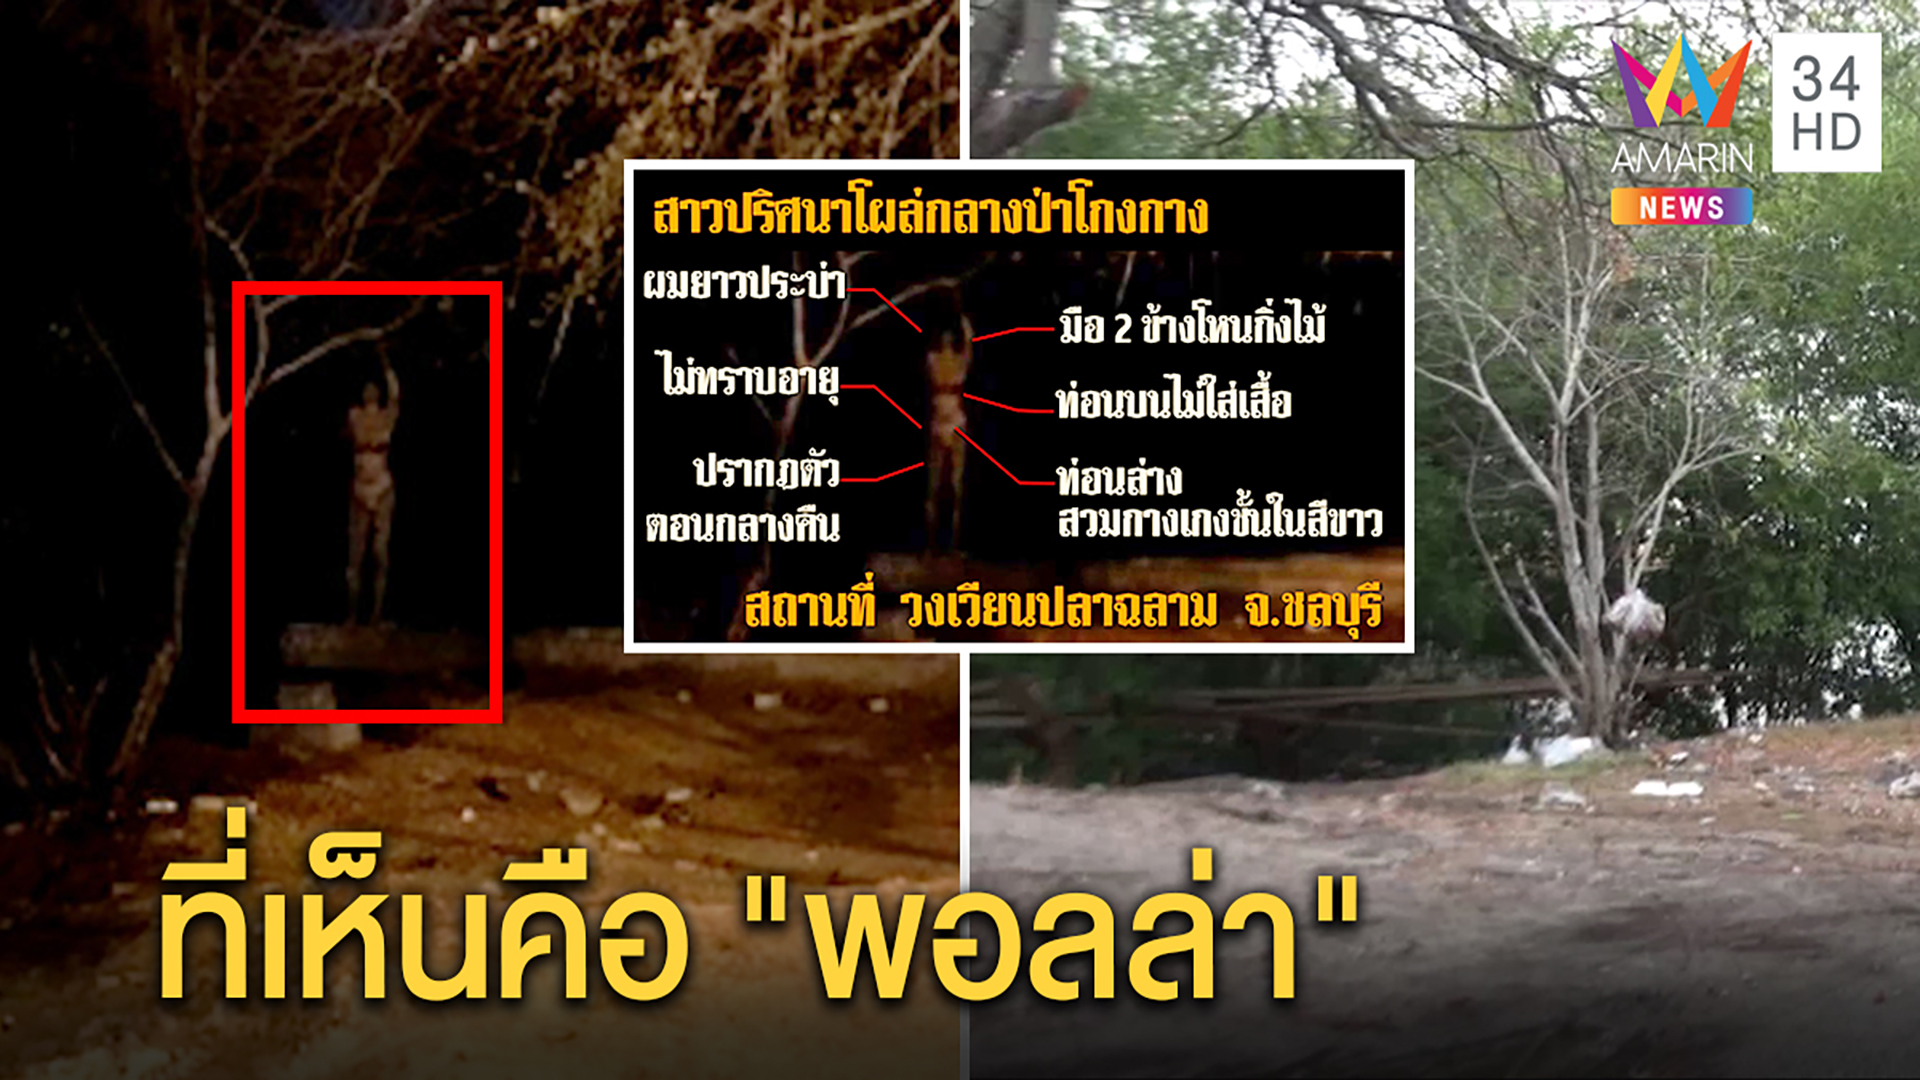 ไขคำตอบ!ภาพถ่ายติดสาวปริศนาโผล่ป่าโกงกาง ไม่ใช่ผีนางไม้ | ทุบโต๊ะข่าว | 15 มี.ค. 63 | AMARIN TVHD34